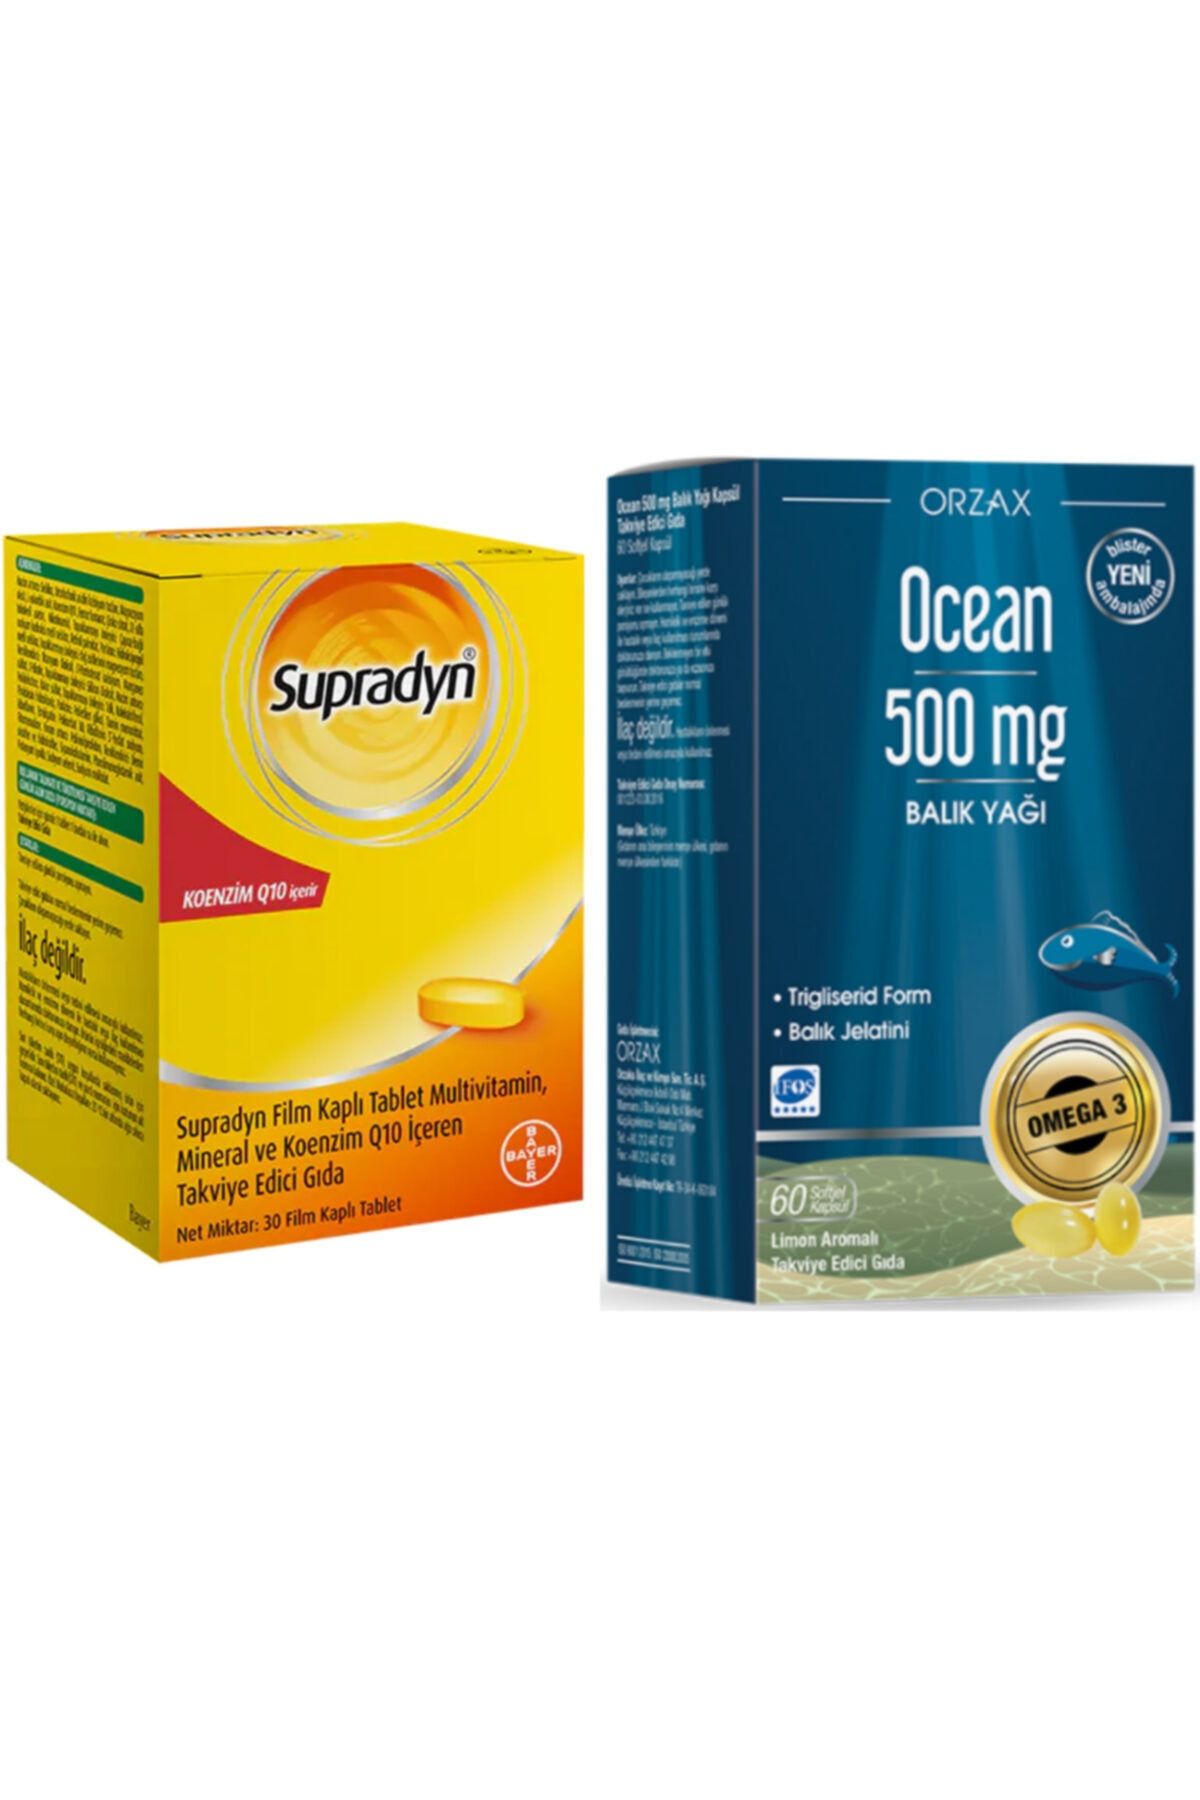 Supradyn Supradyn Koenzim Q10 30 Tablet + Ocean Omega-3 Balık Yağı 500 Mg 60 Kapsül